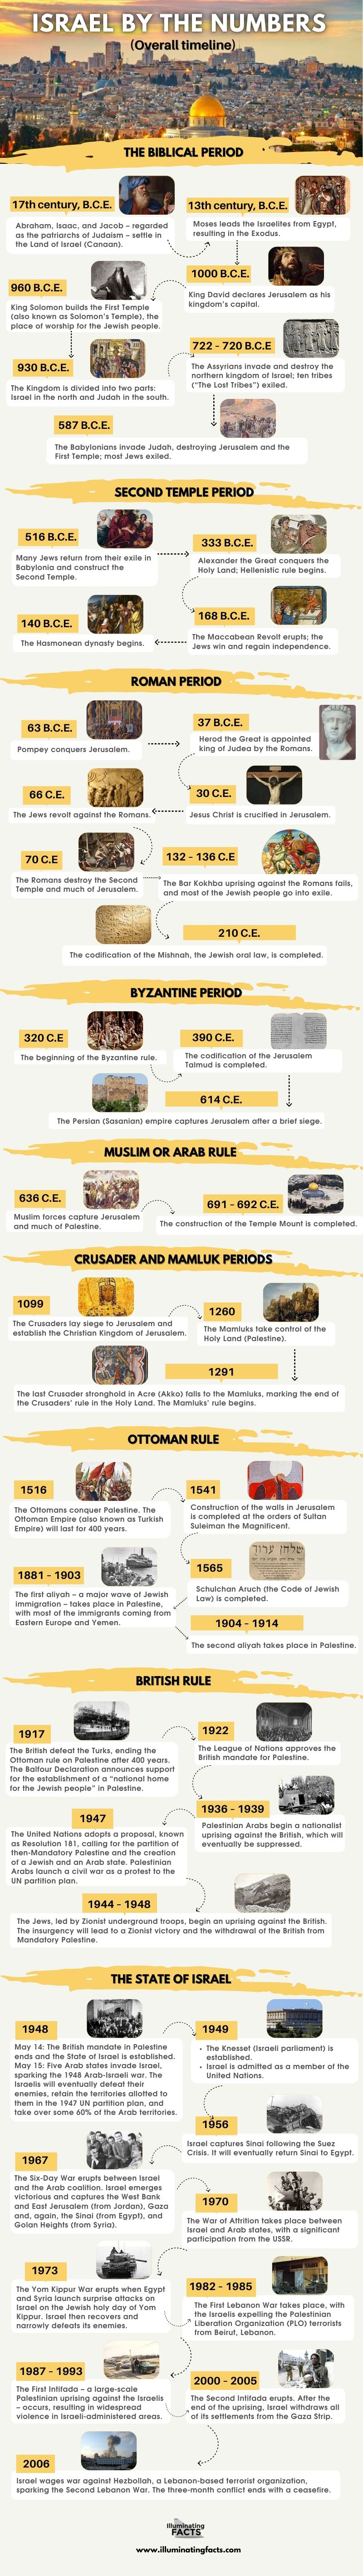 ISRAEL HISTORICAL TIMELINE